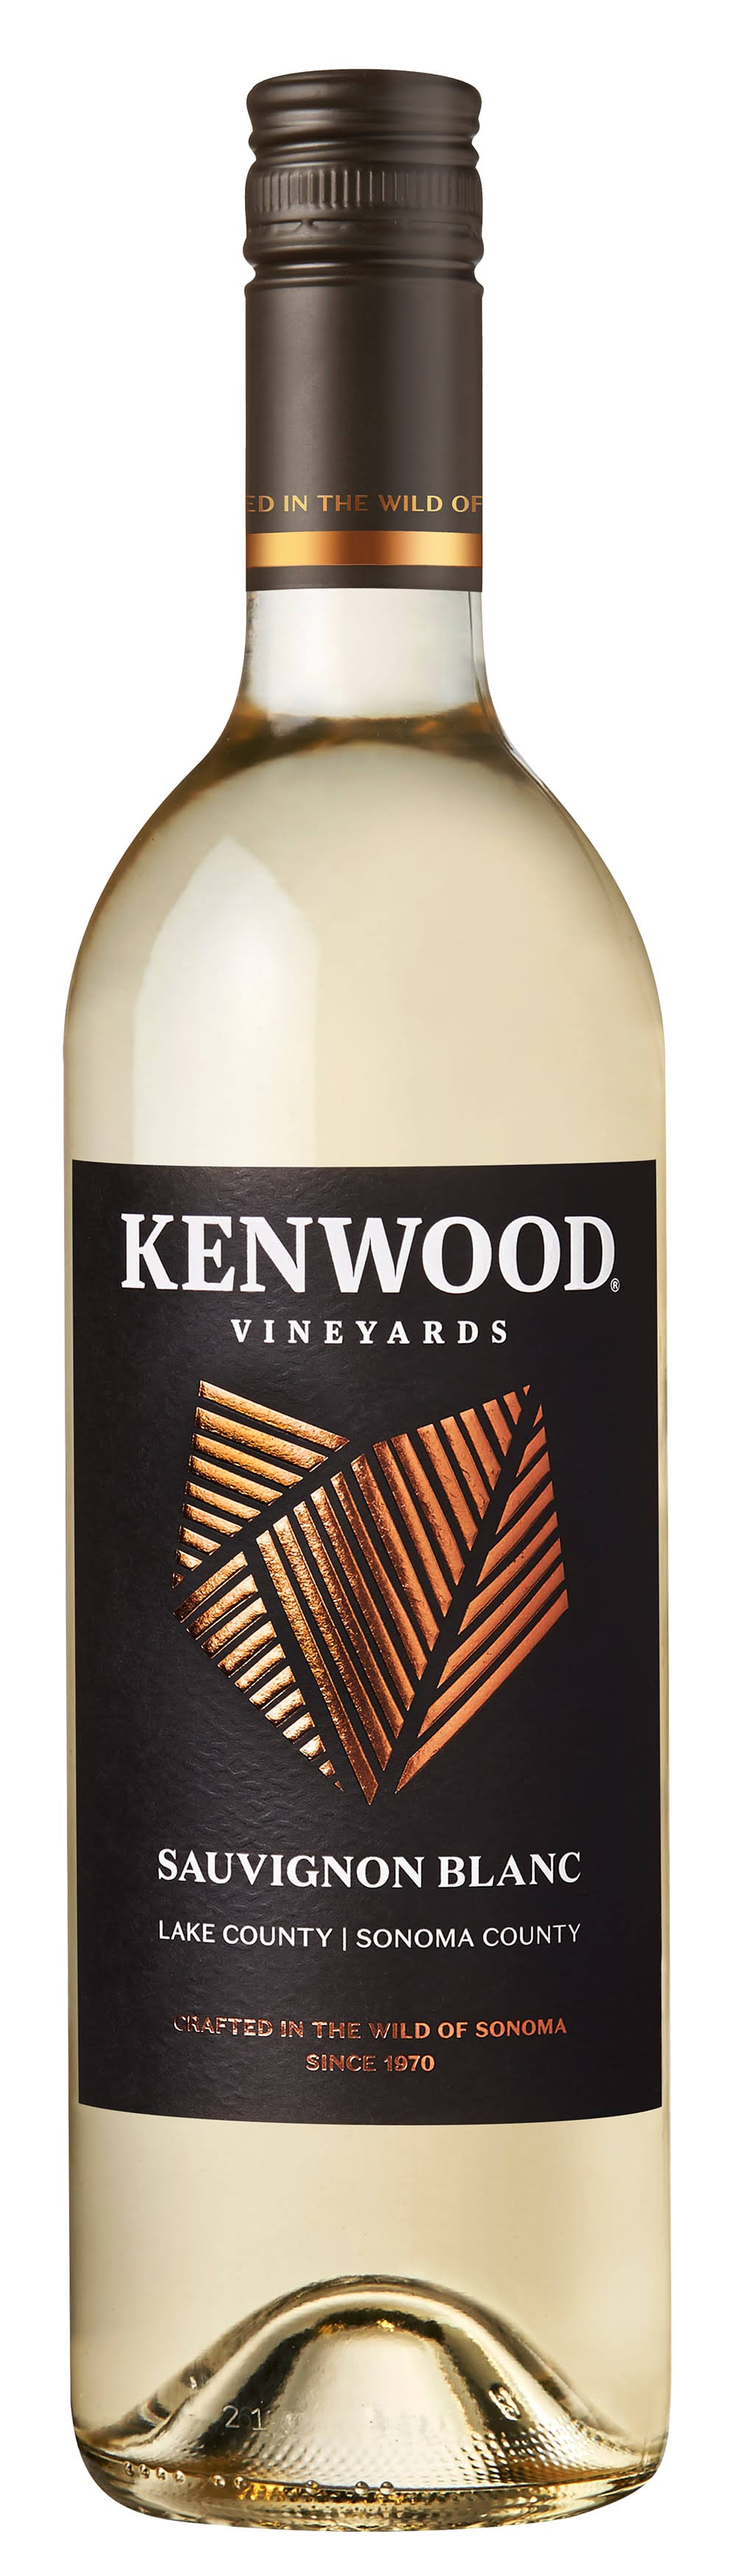 Kenwood Sauvignon Blanc 2016